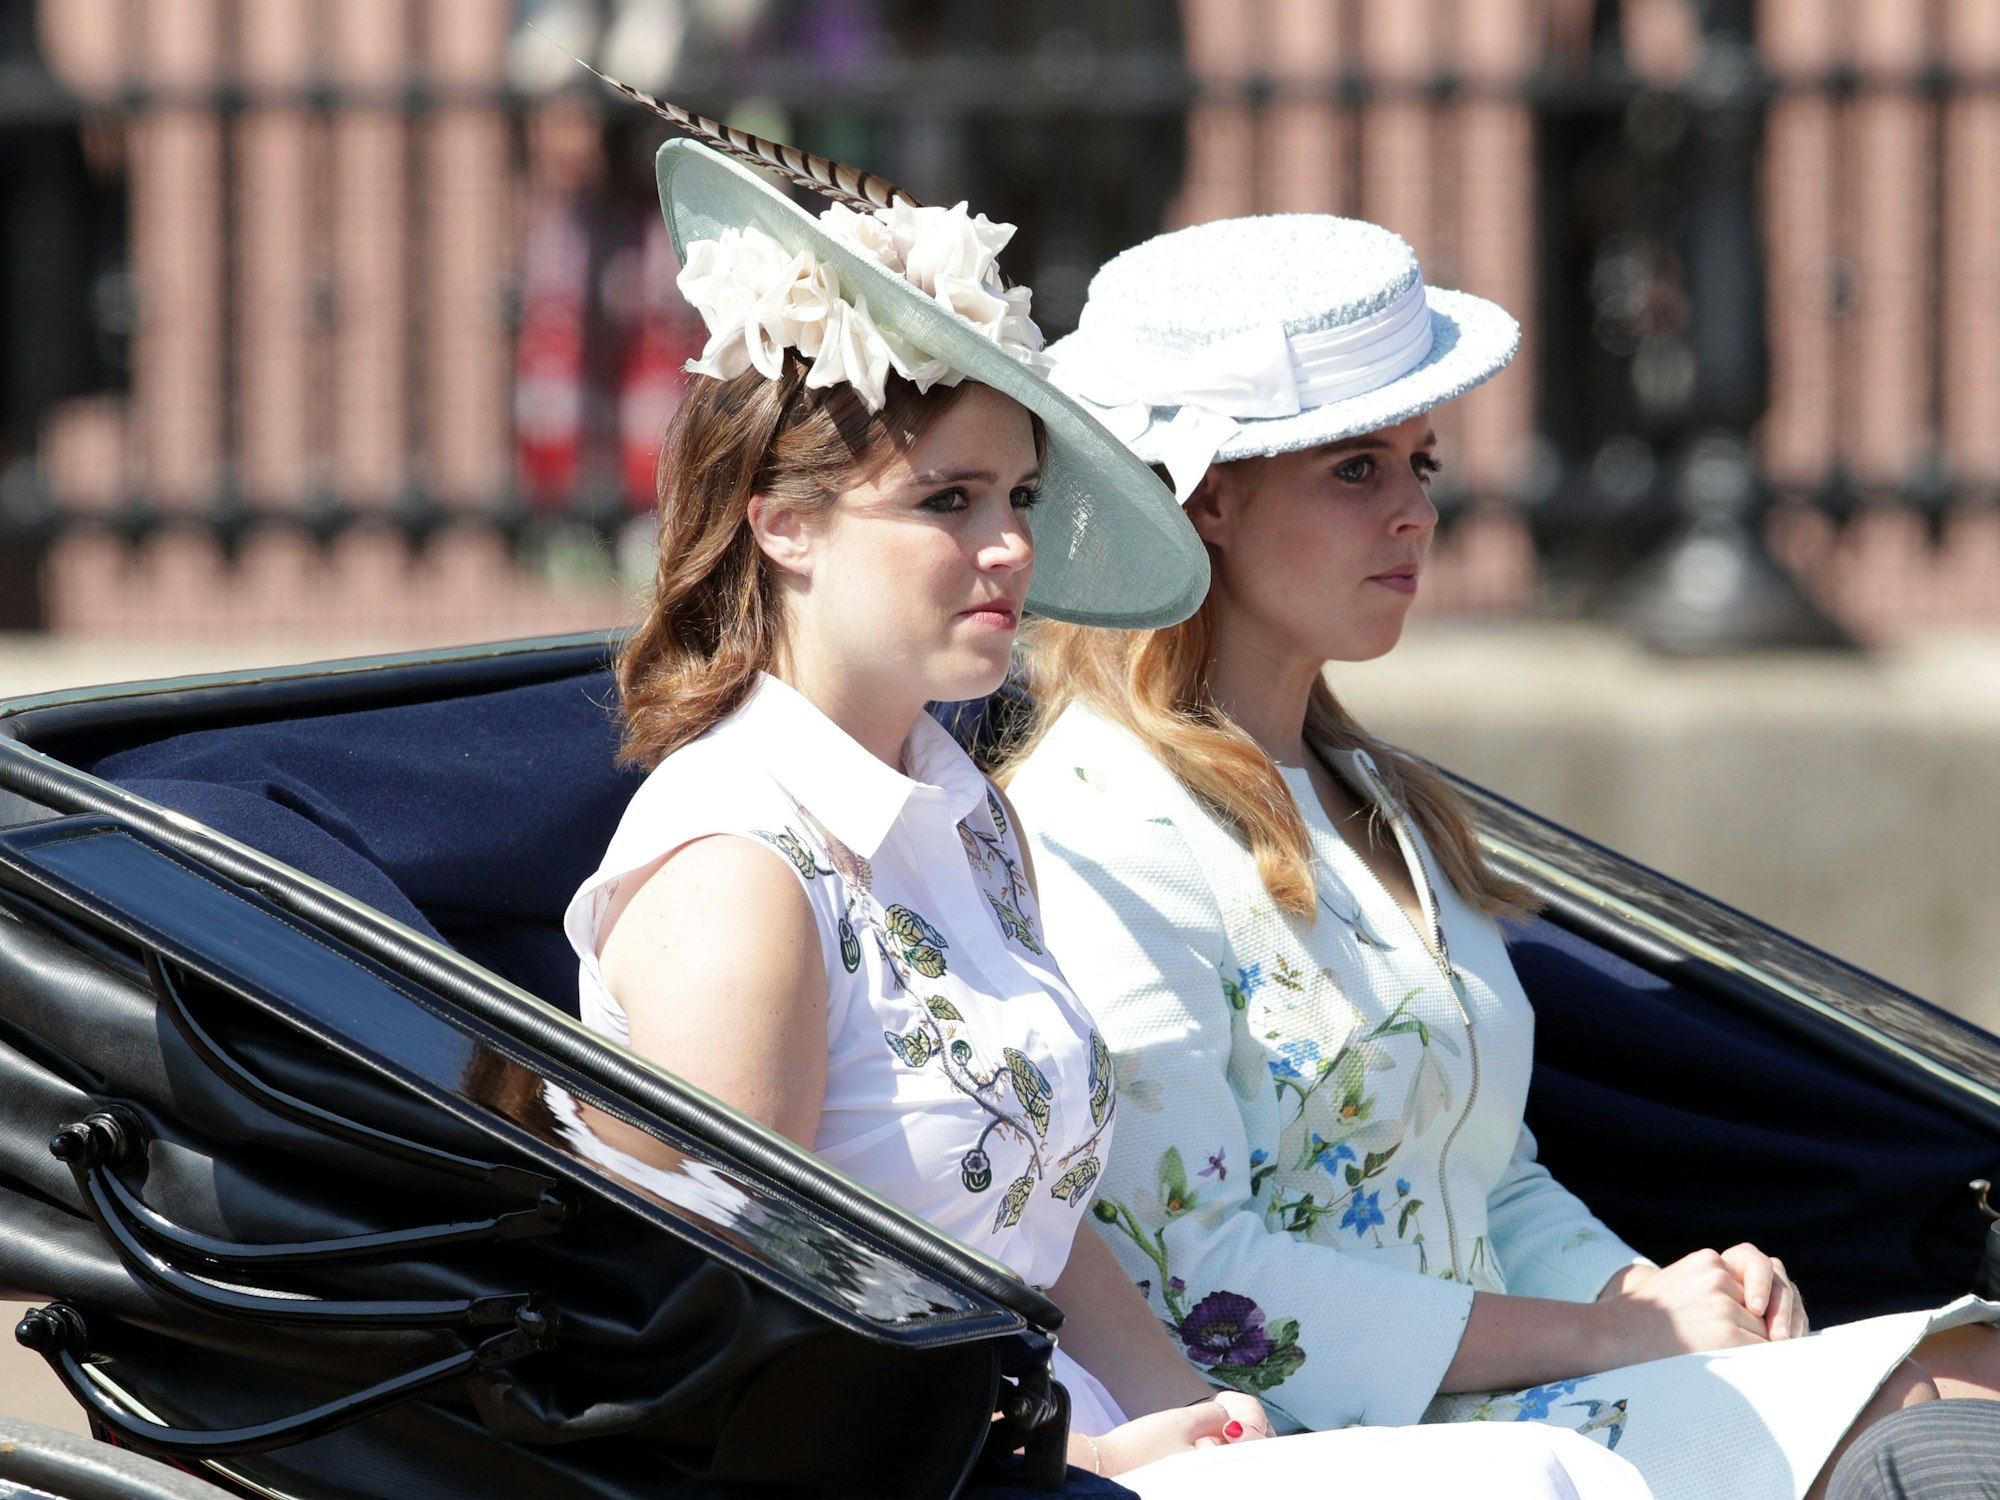 Weniger extravagant, dafür im blumigen Outfit fuhren die britischen Prinzessinen Eugenie (l) und Beatrice am 17. Juni 2017 in London bei der farbenfrohen Parade „Trooping the Colour“ anlässlich des damals 91. Geburtstages von Queen Elizabeth II. (†96) in einer Kutsche.